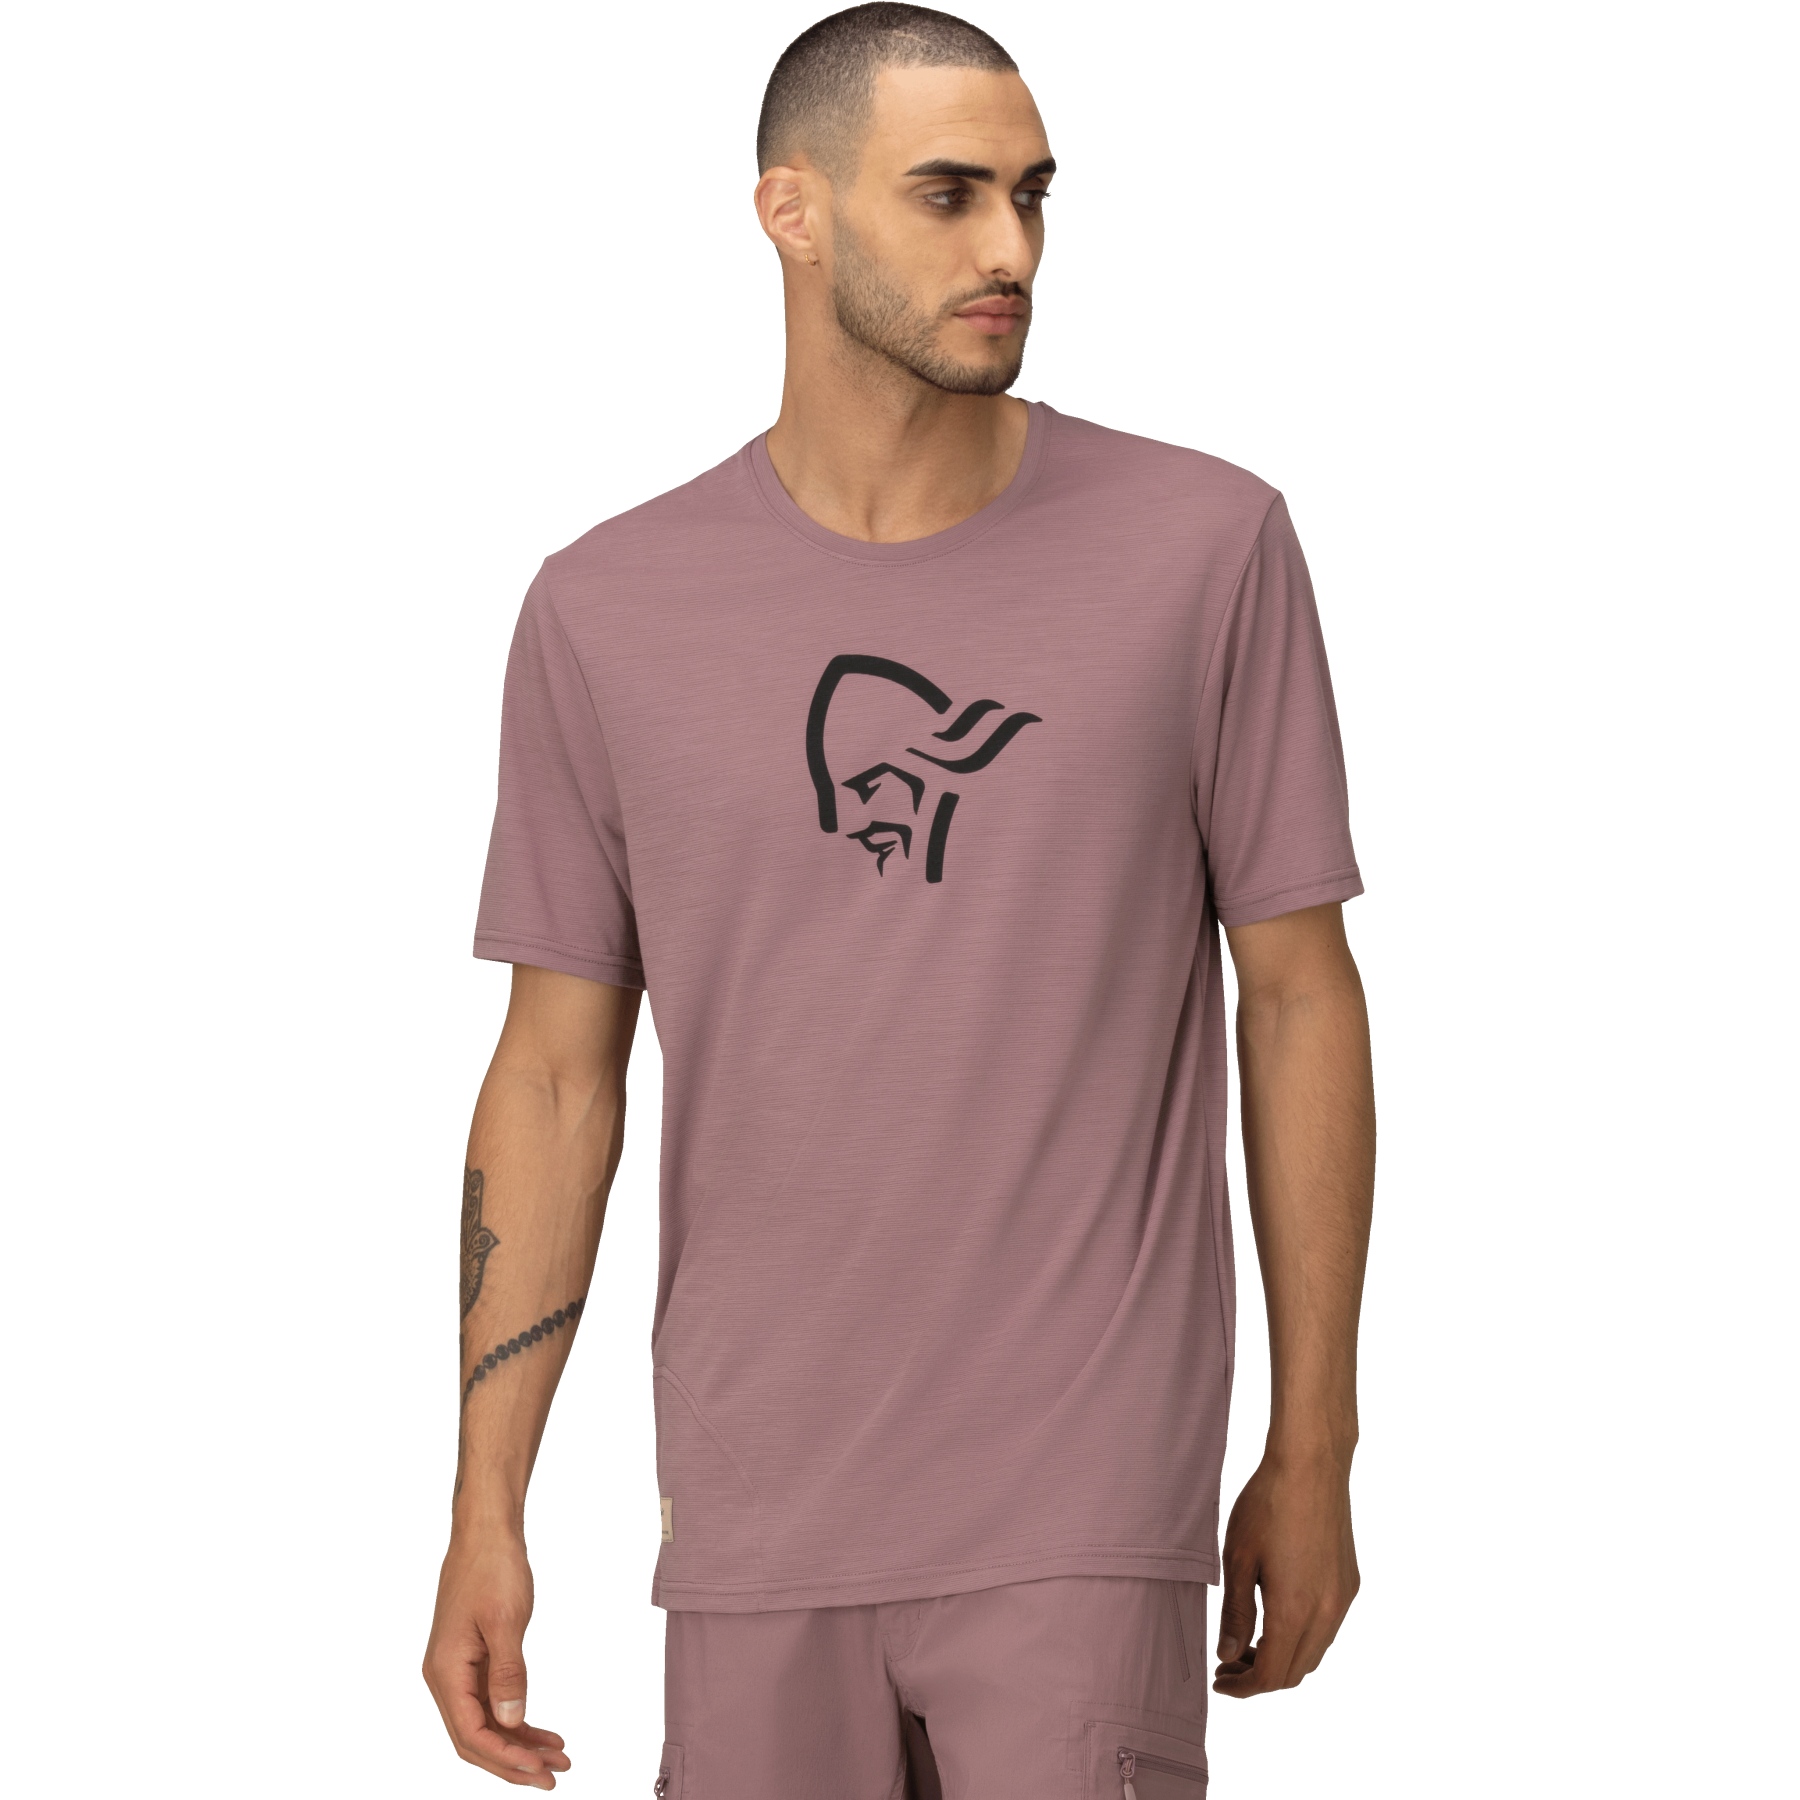 Productfoto van Norrona femund equaliser merino T-Shirt Heren - Grape Shake